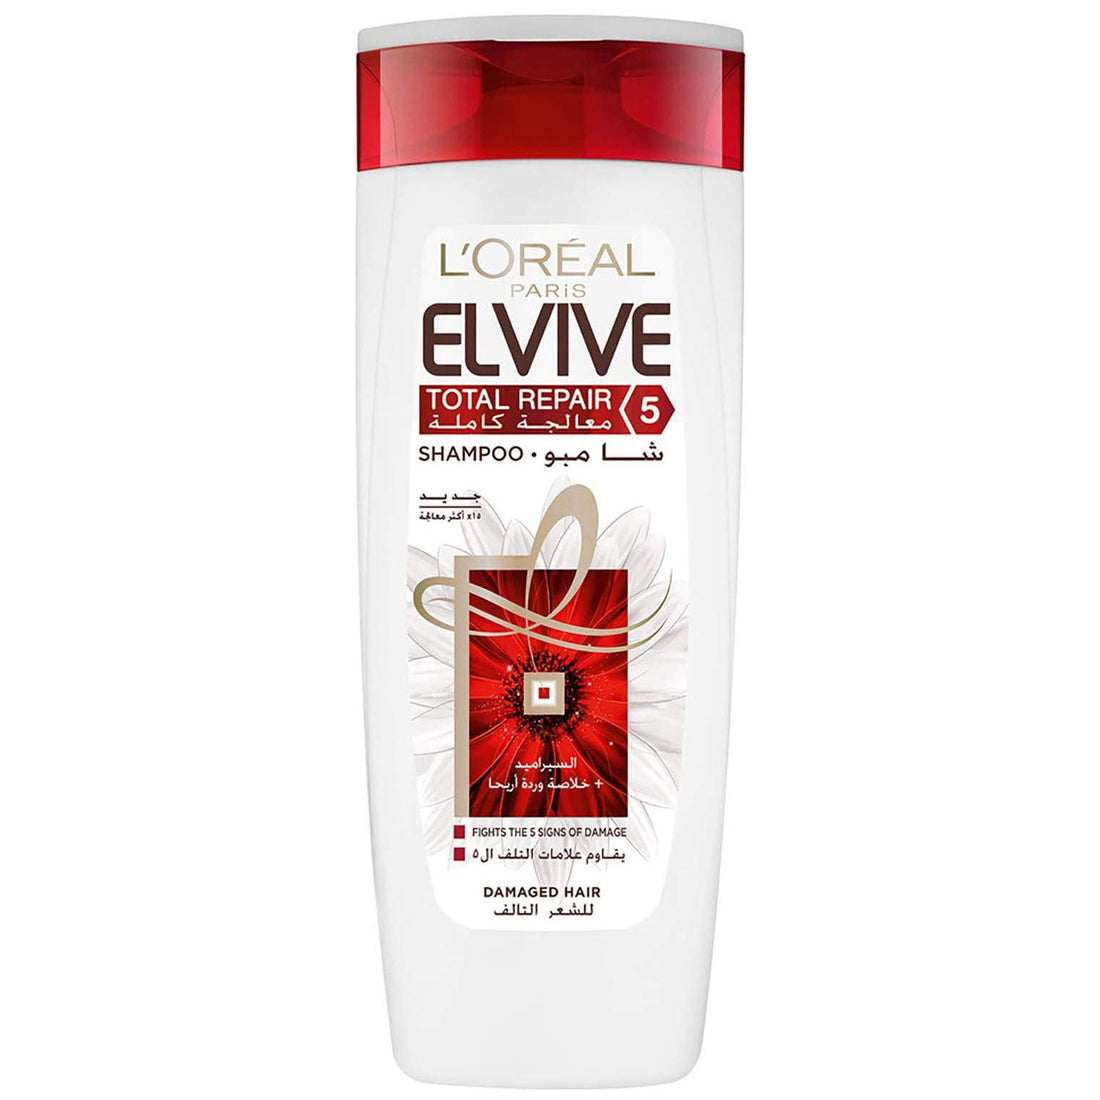 L’Oréal Paris Elvive Shampoo Total Repair5 Damage Hair 200ml